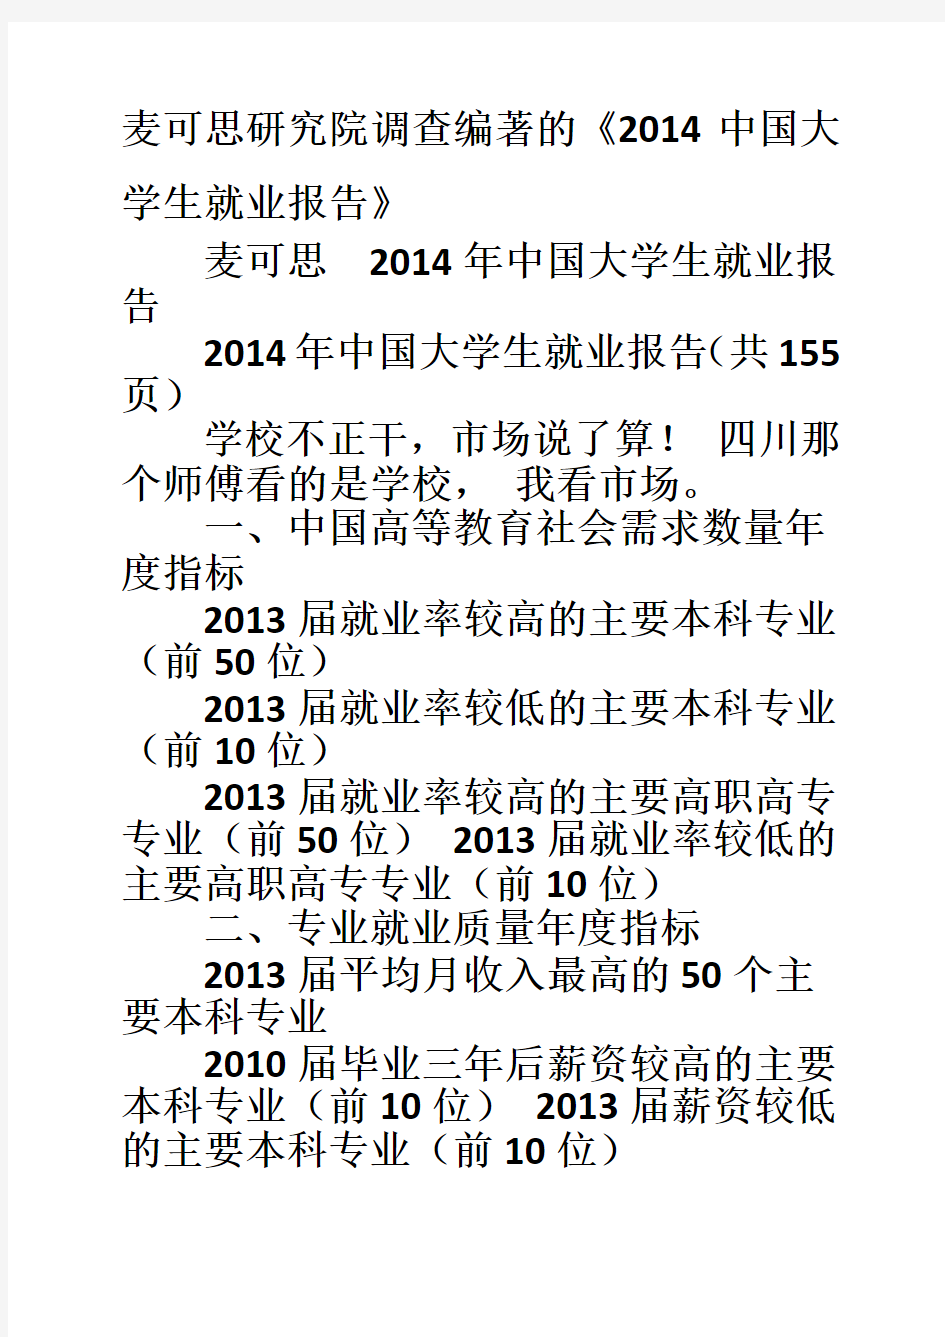 2020年新编麦可思研究院调查编著的《中国大学生就业报告》名师精品资料.